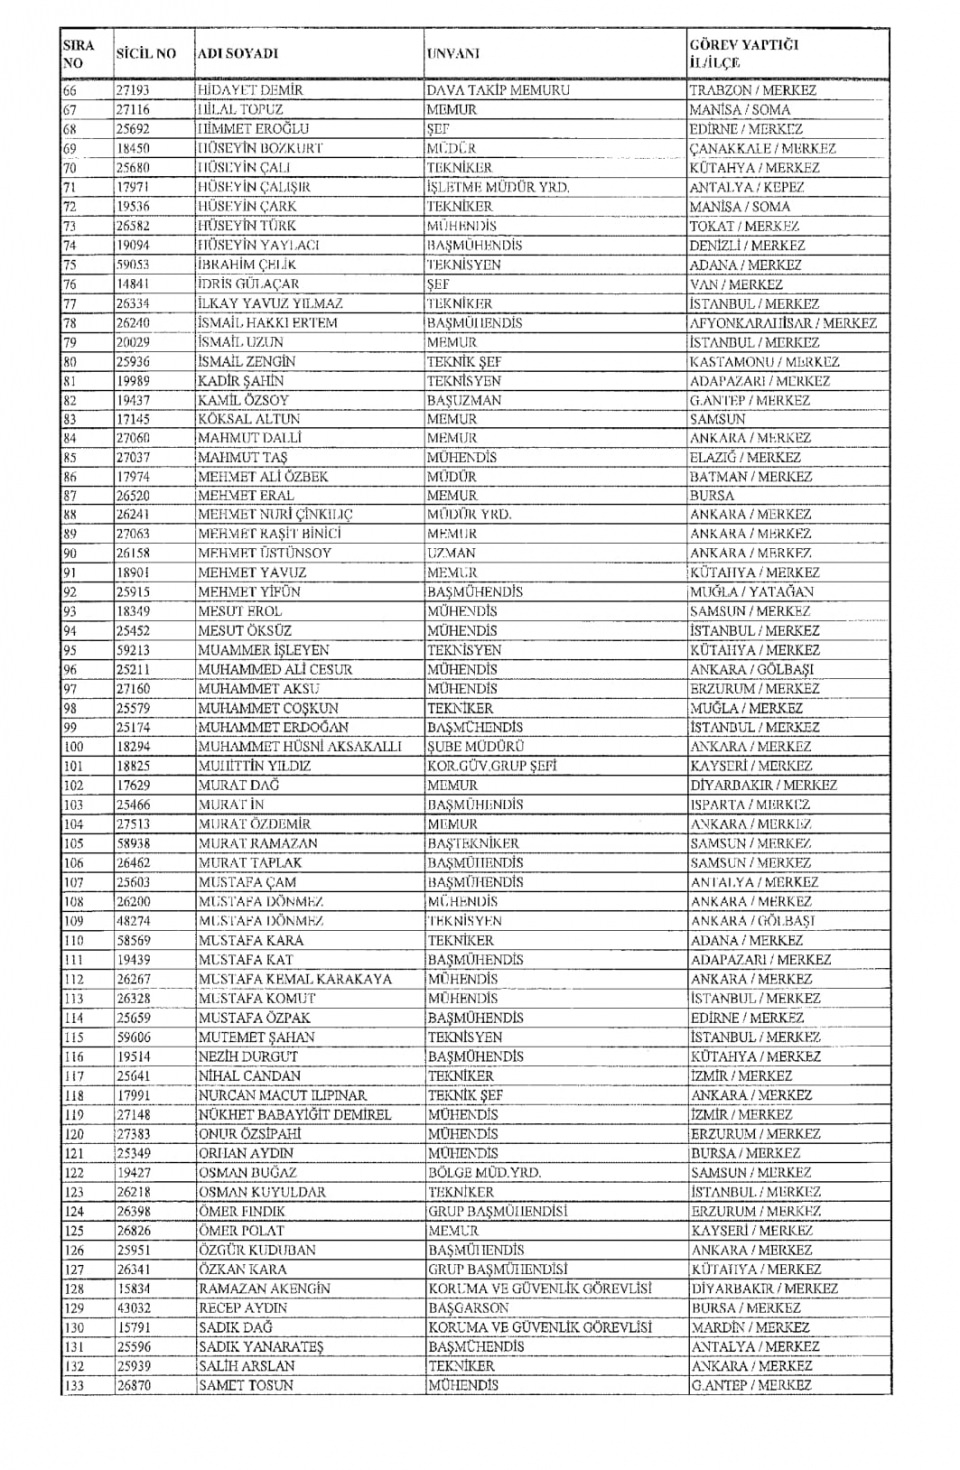 İşte kamuda ihraç edilenlerin tam listesi 139